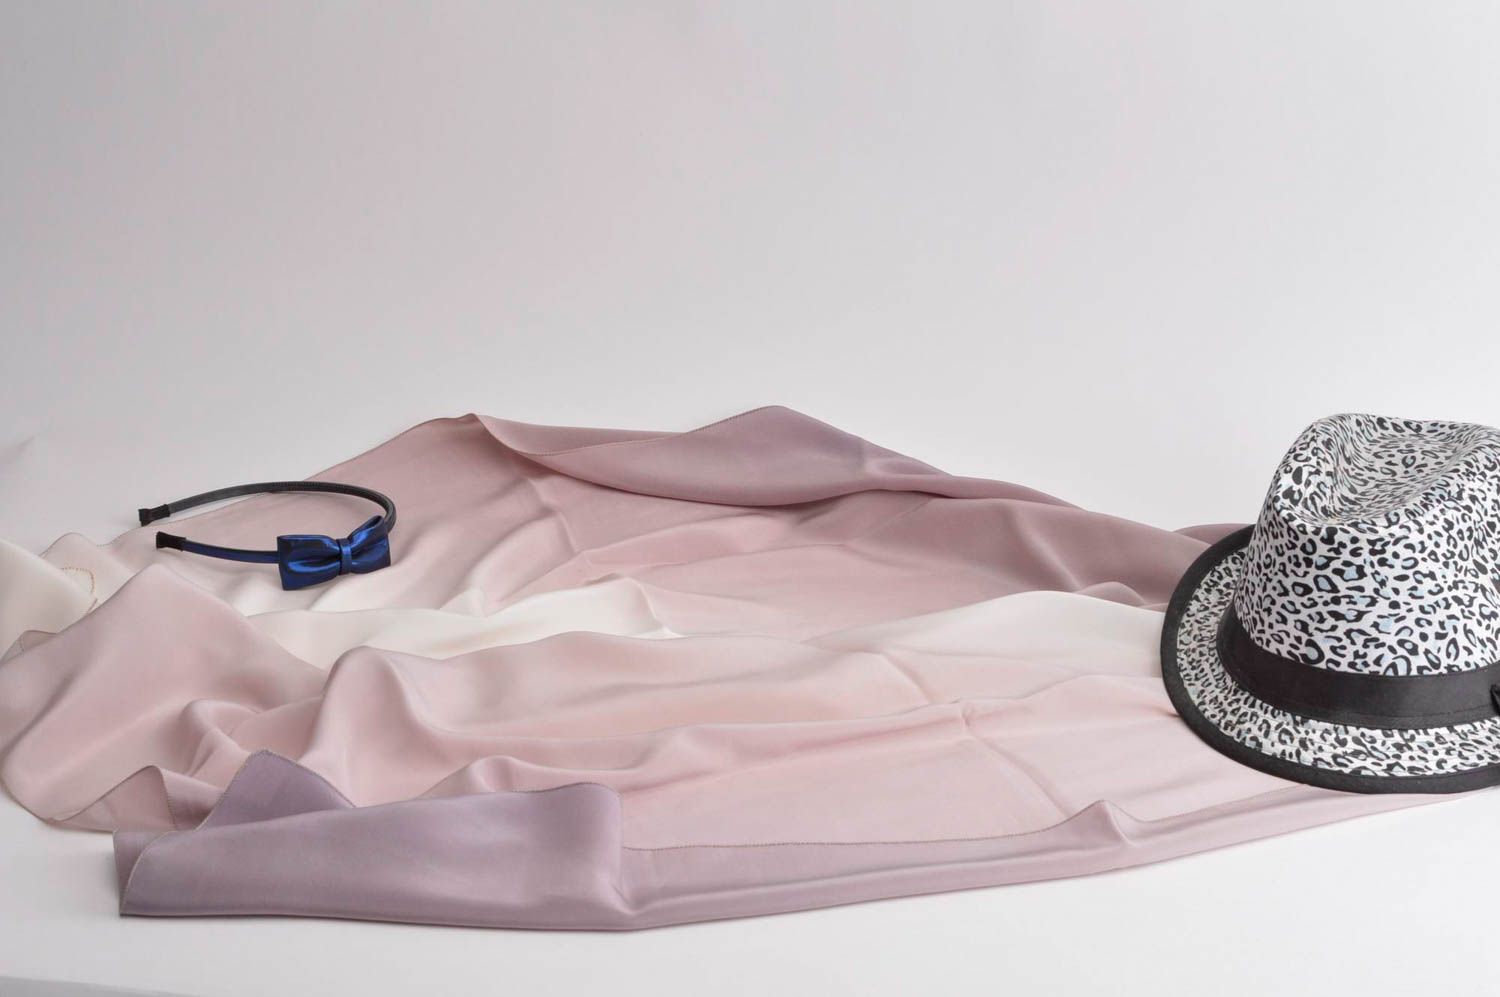 Подарок ручной работы палантин из шелка пастельных оттенков женский аксессуар фото 1